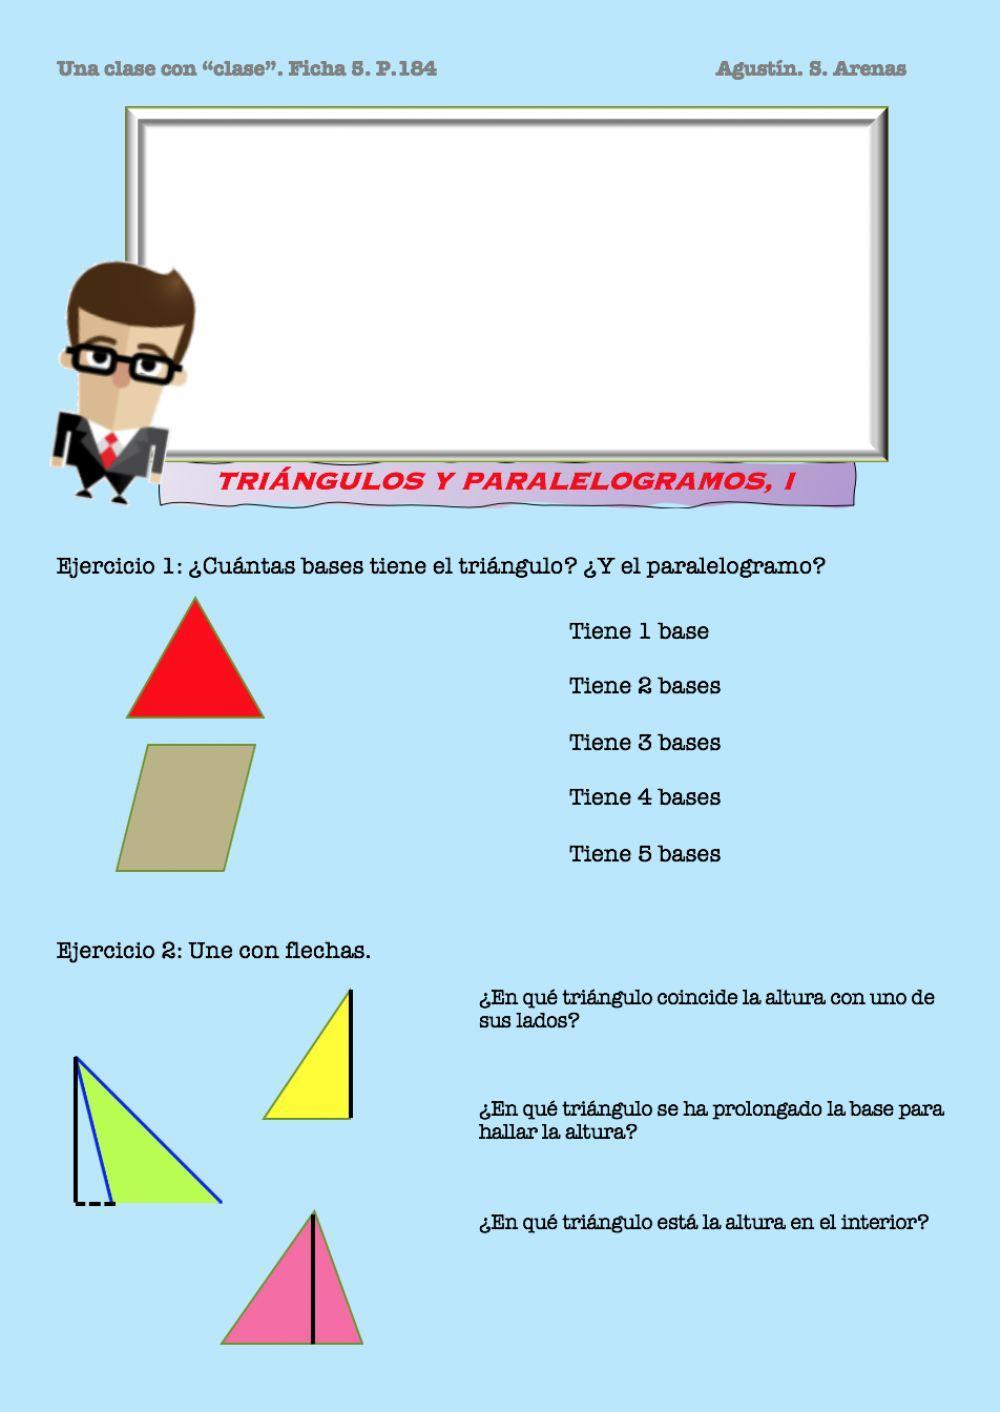 Triángulos y paralelogramos: base y altura.